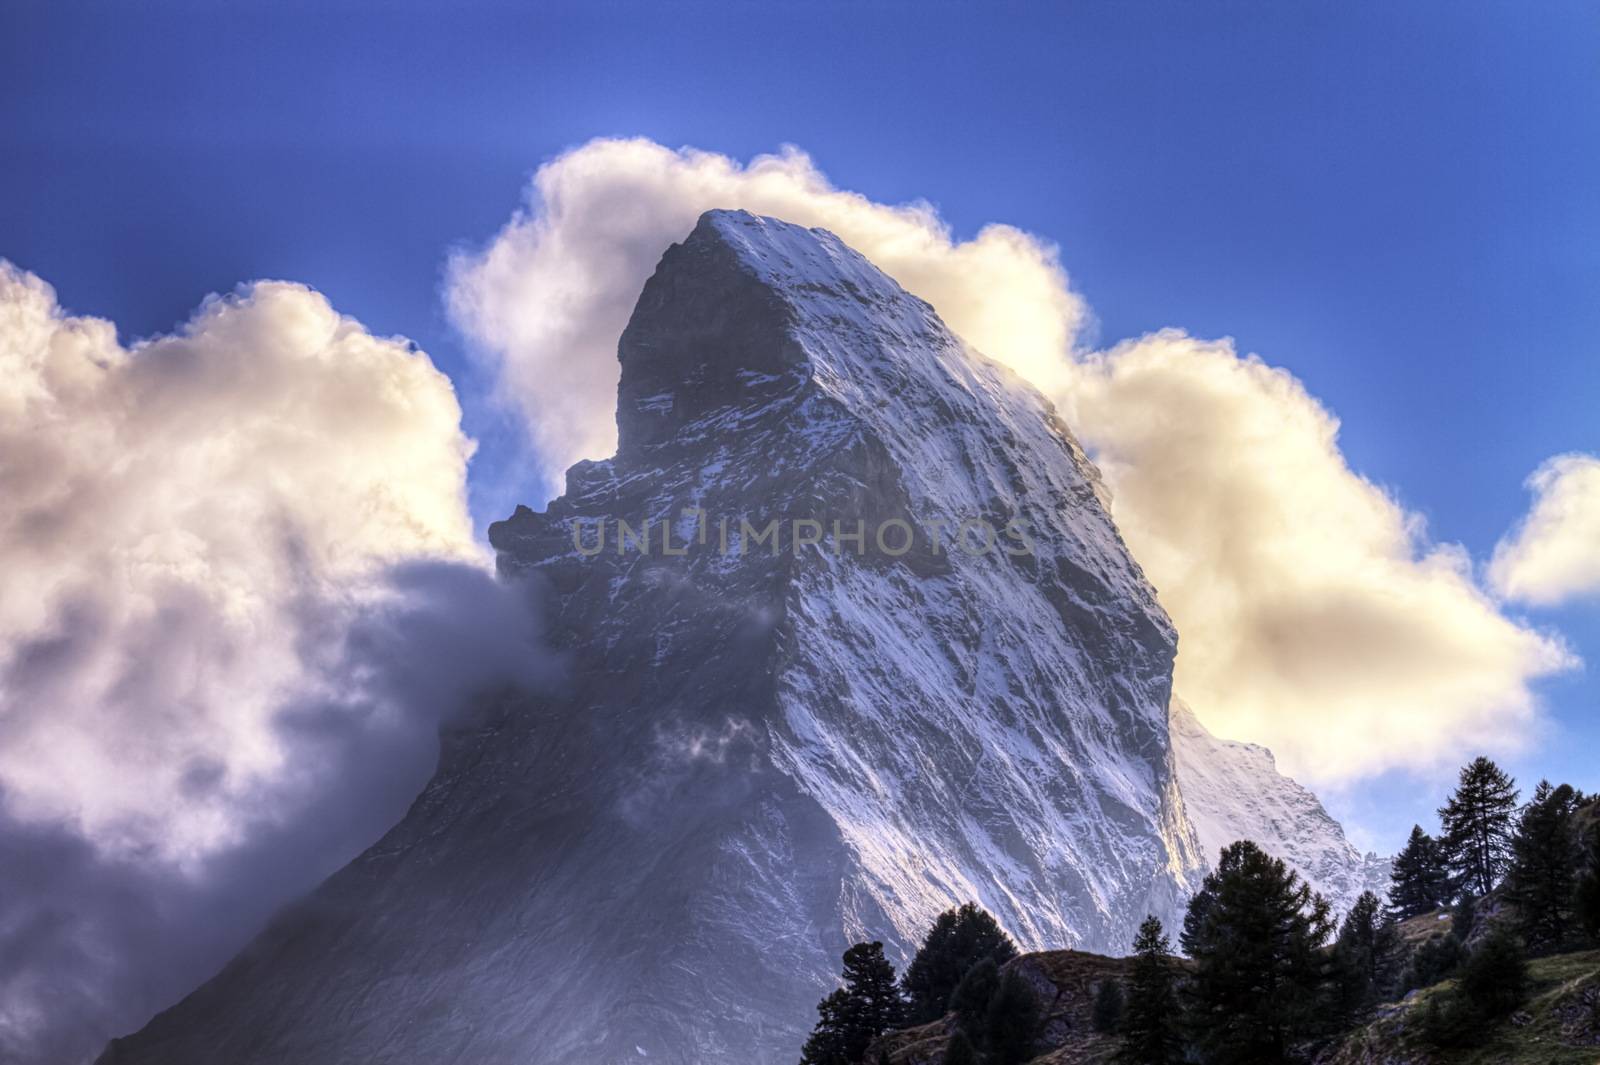 Matterhorn surrounded with clouds by day, Zermatt, Switzerland